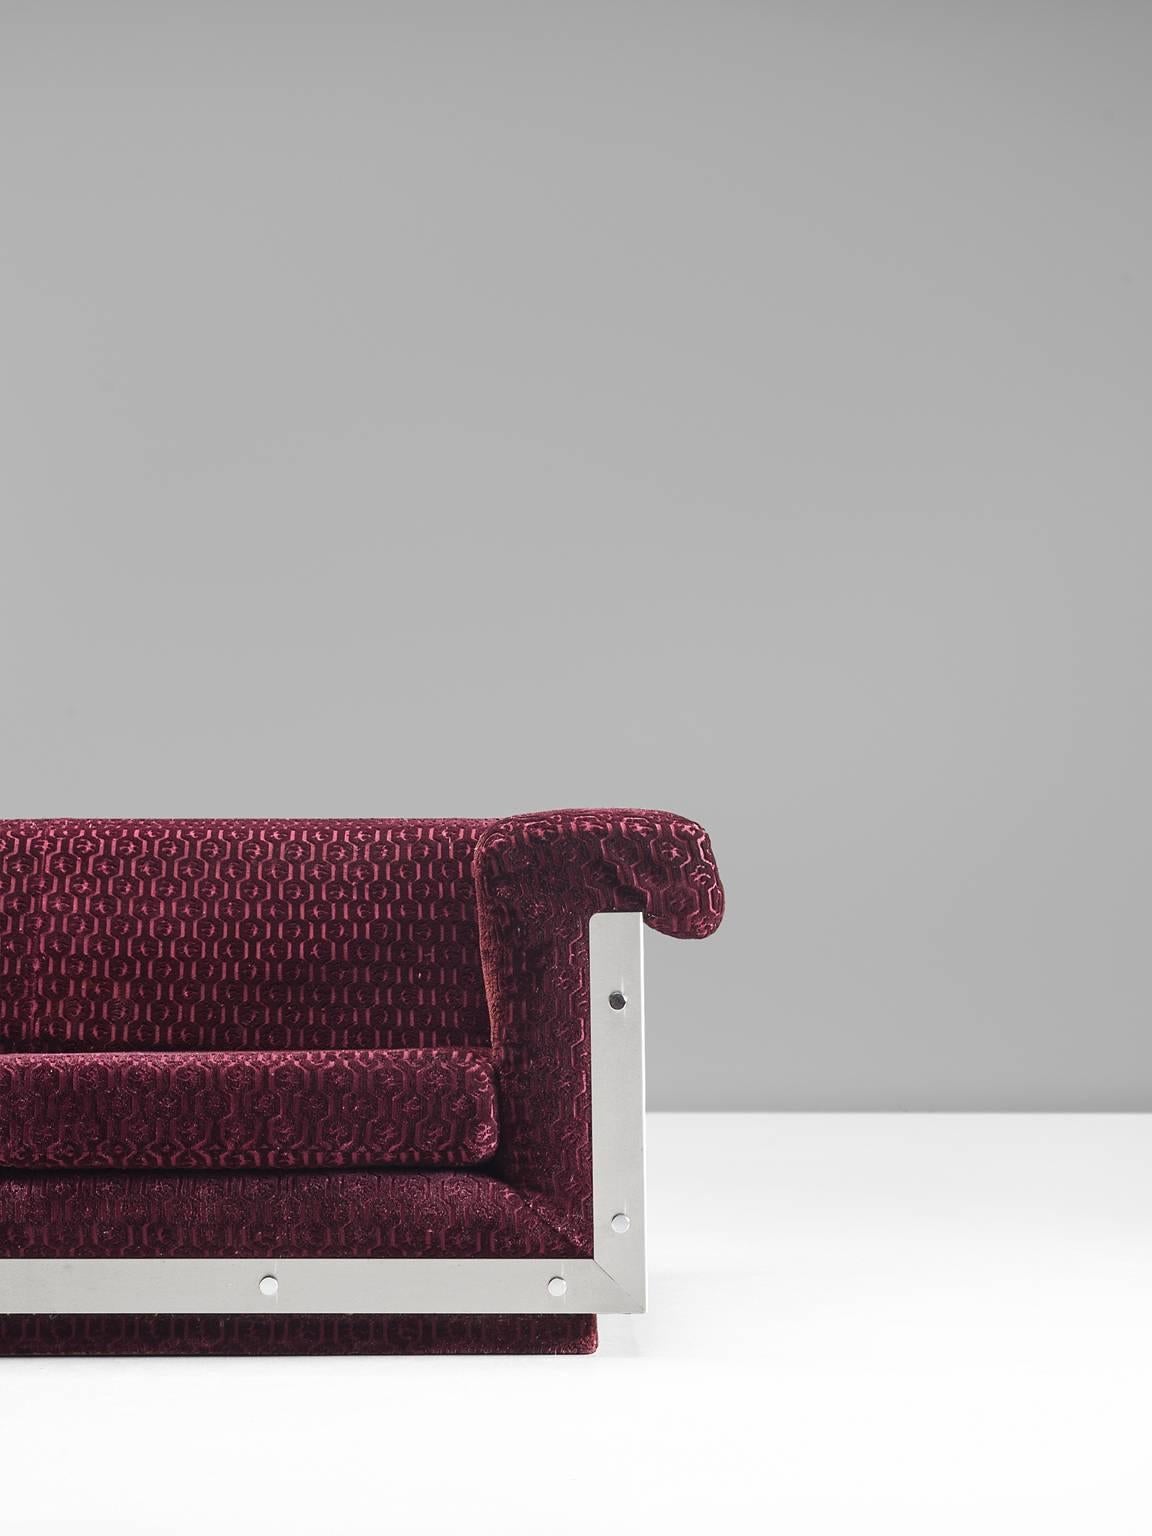 French Sofa in Stainless Steel and Burgundy Velvet Upholstery 2